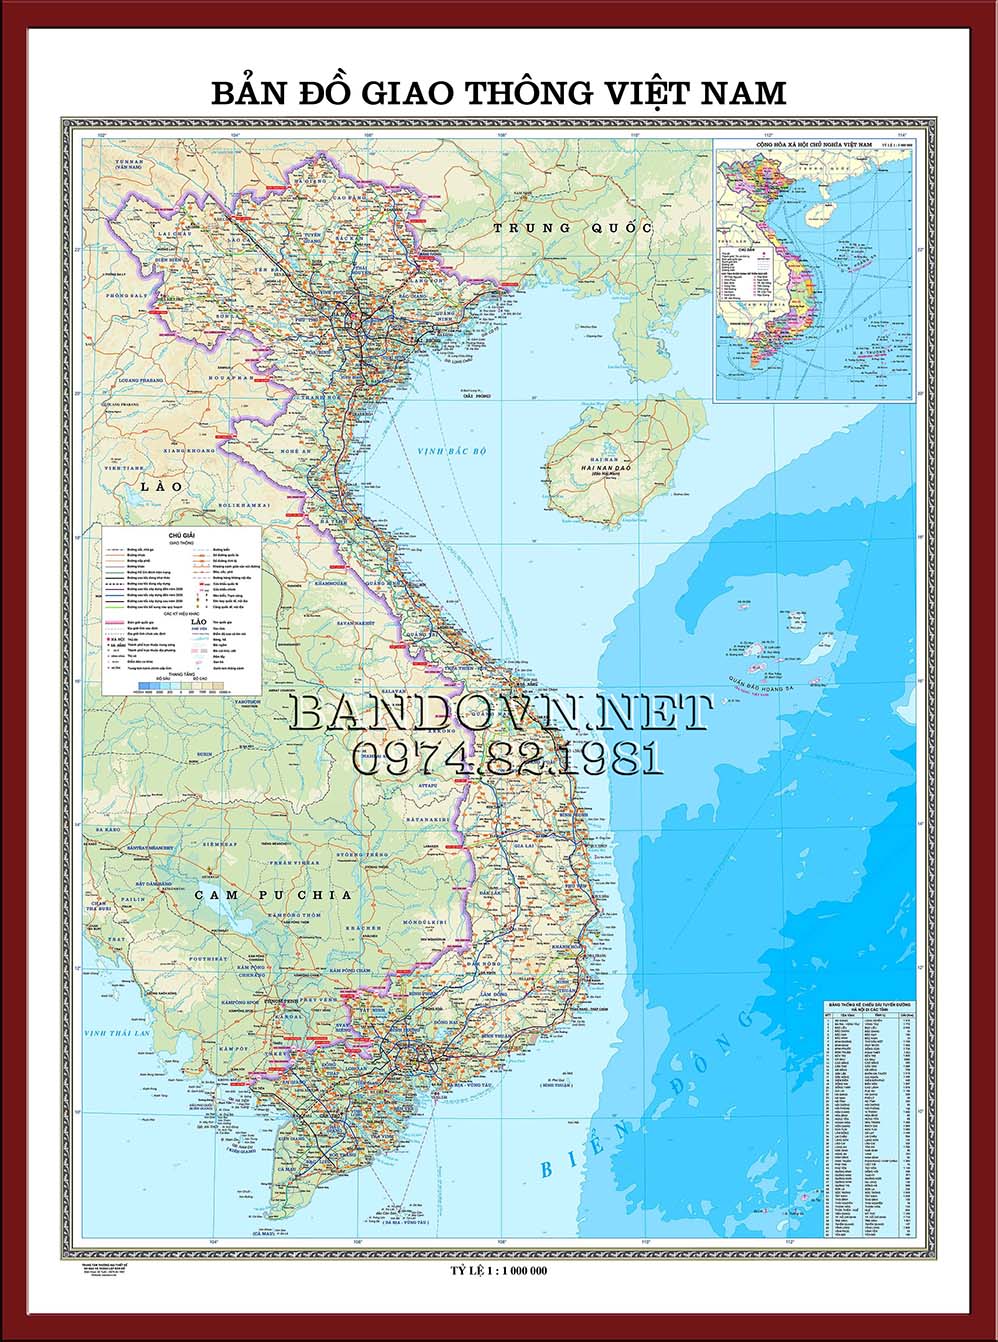 Bản đồ giao thông Việt Nam 2024 đã ra mắt! Nó cung cấp thông tin chi tiết về các tuyến đường chính và phụ trên khắp Việt Nam. Với những thông tin tổng quan về giao thông, bạn sẽ dễ dàng cập nhật với tình hình giao thông địa phương, giúp bạn di chuyển an toàn và thuận tiện hơn.